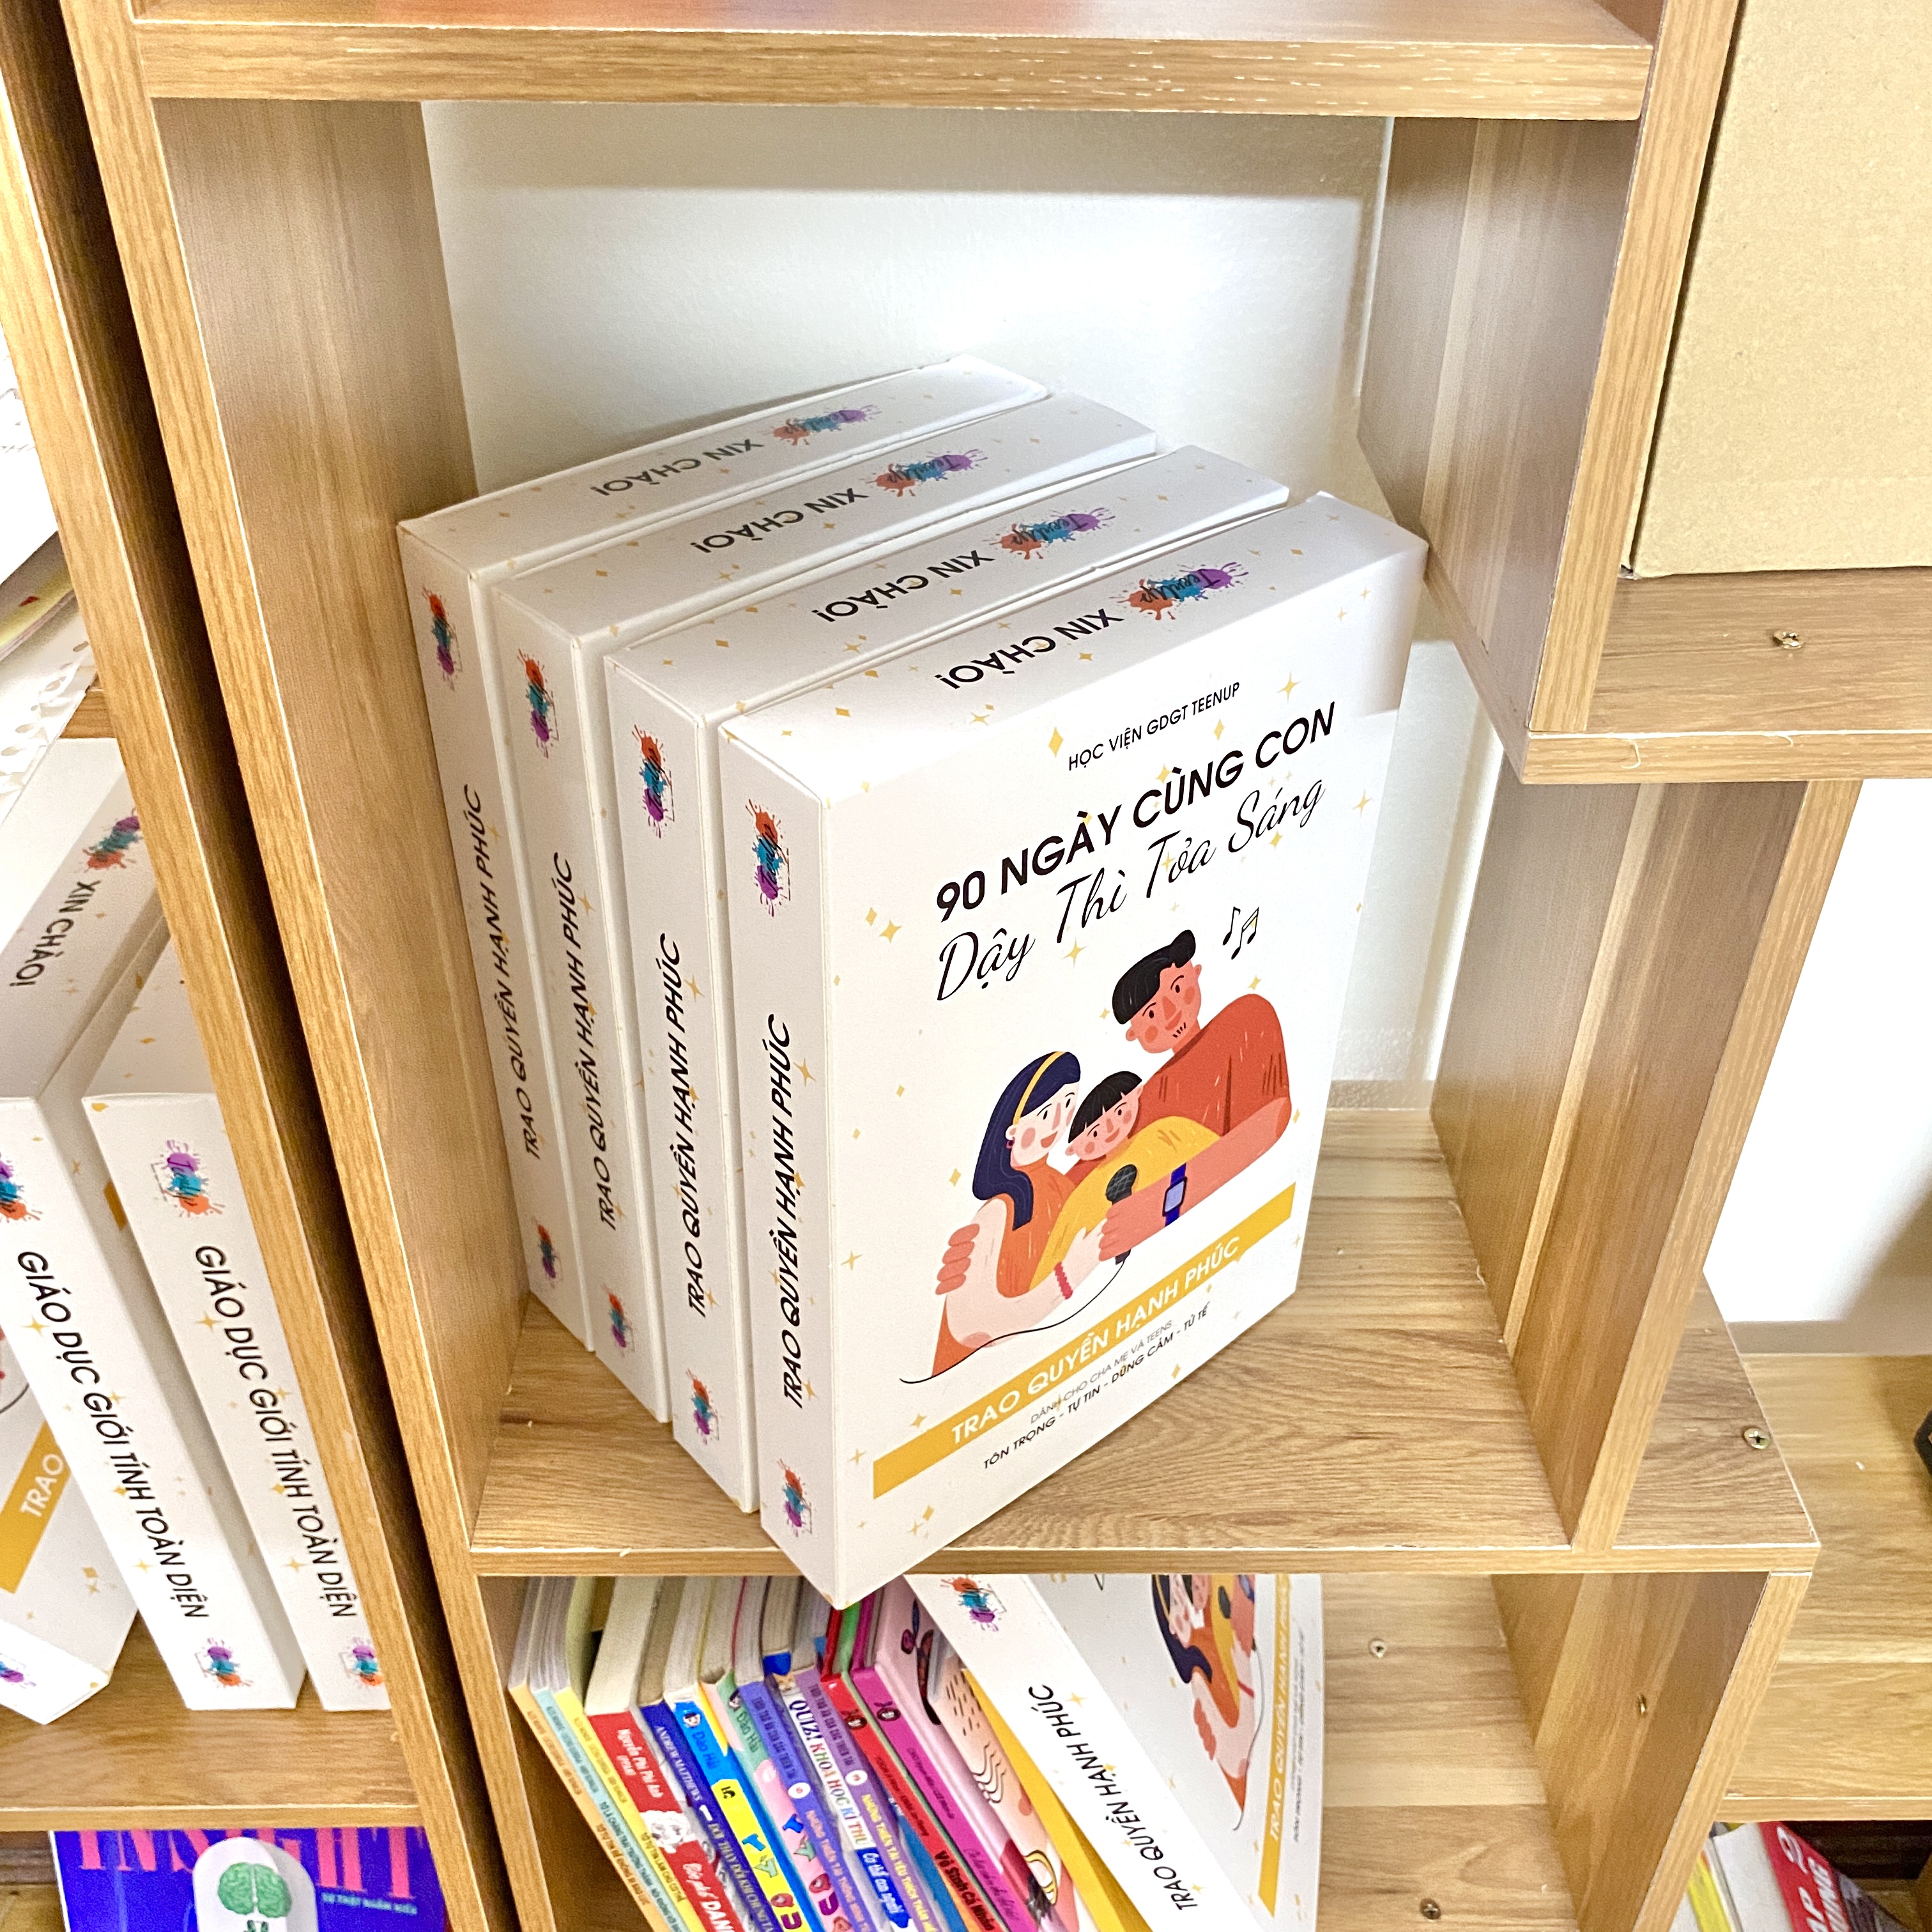 Bộ sách TeenUp “90 ngày cùng con dậy thì tỏa sáng” WEGROW - Sách giáo dục giới tính toàn diện đầu tiên tại Việt Nam, giúp cha mẹ đồng hành cùng con tuổi dậy thì